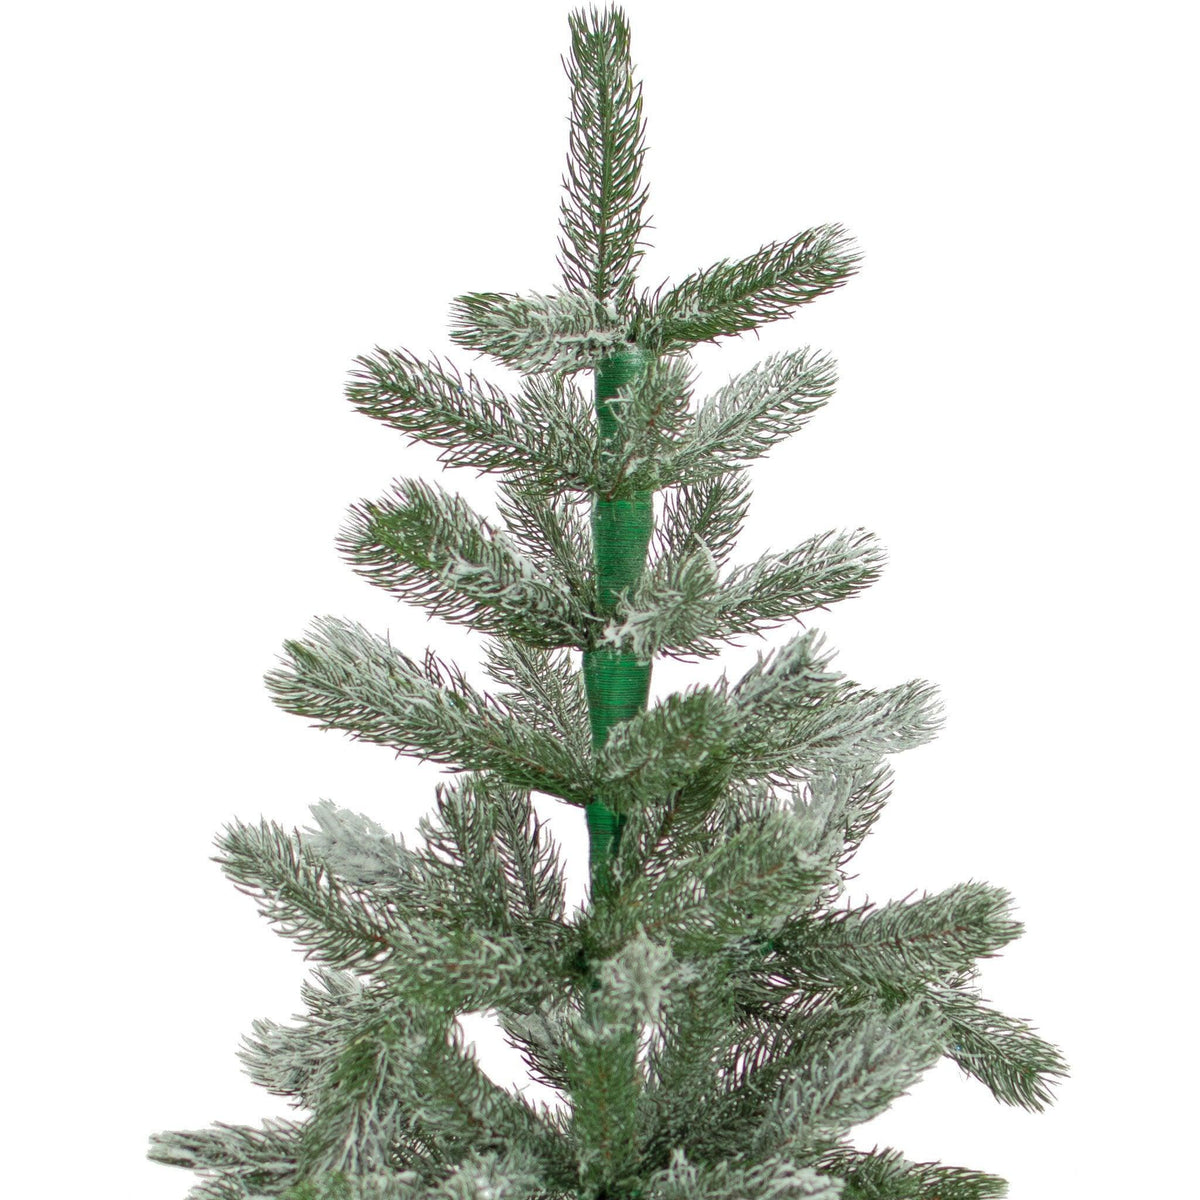 Lee Display's Aspen Green Flocked Christmas Tree Unlit and on sale at leedisplay.com